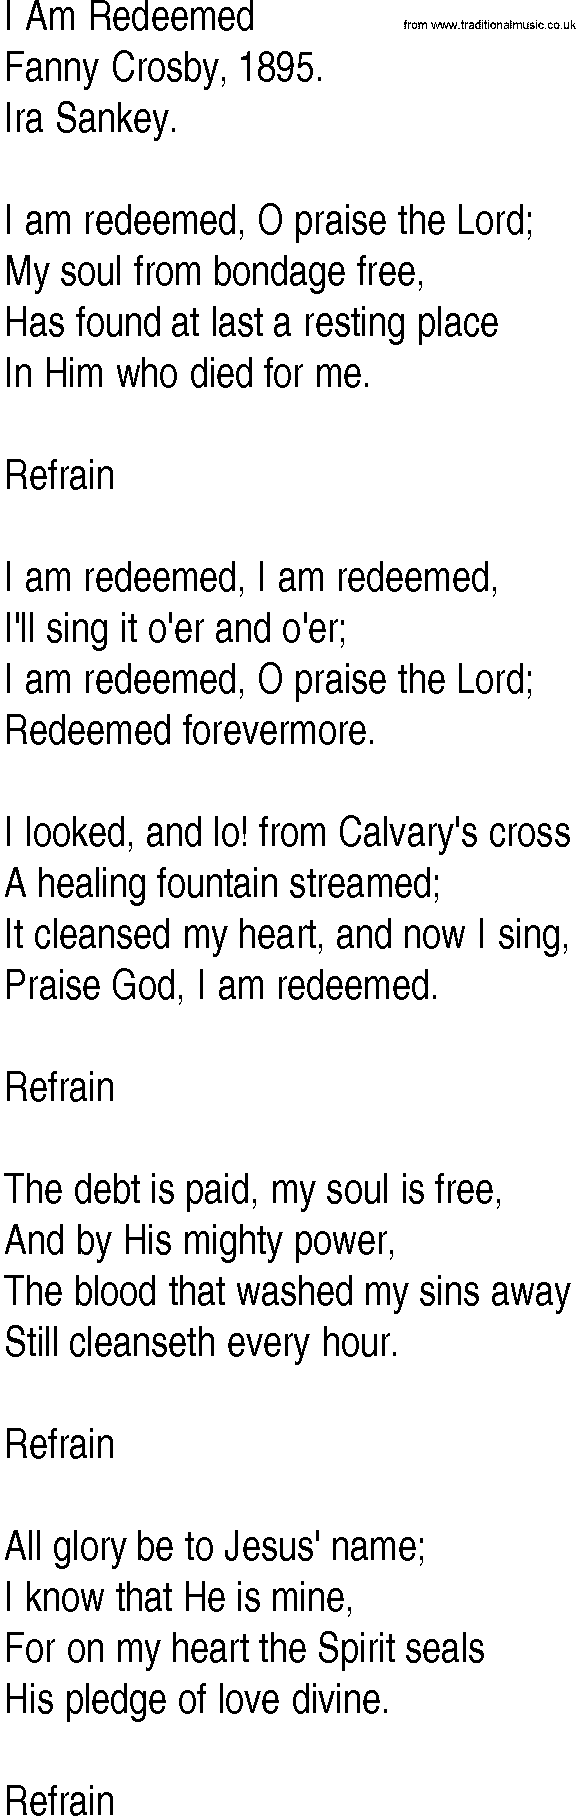 Hymn and Gospel Song: I Am Redeemed by Fanny Crosby lyrics